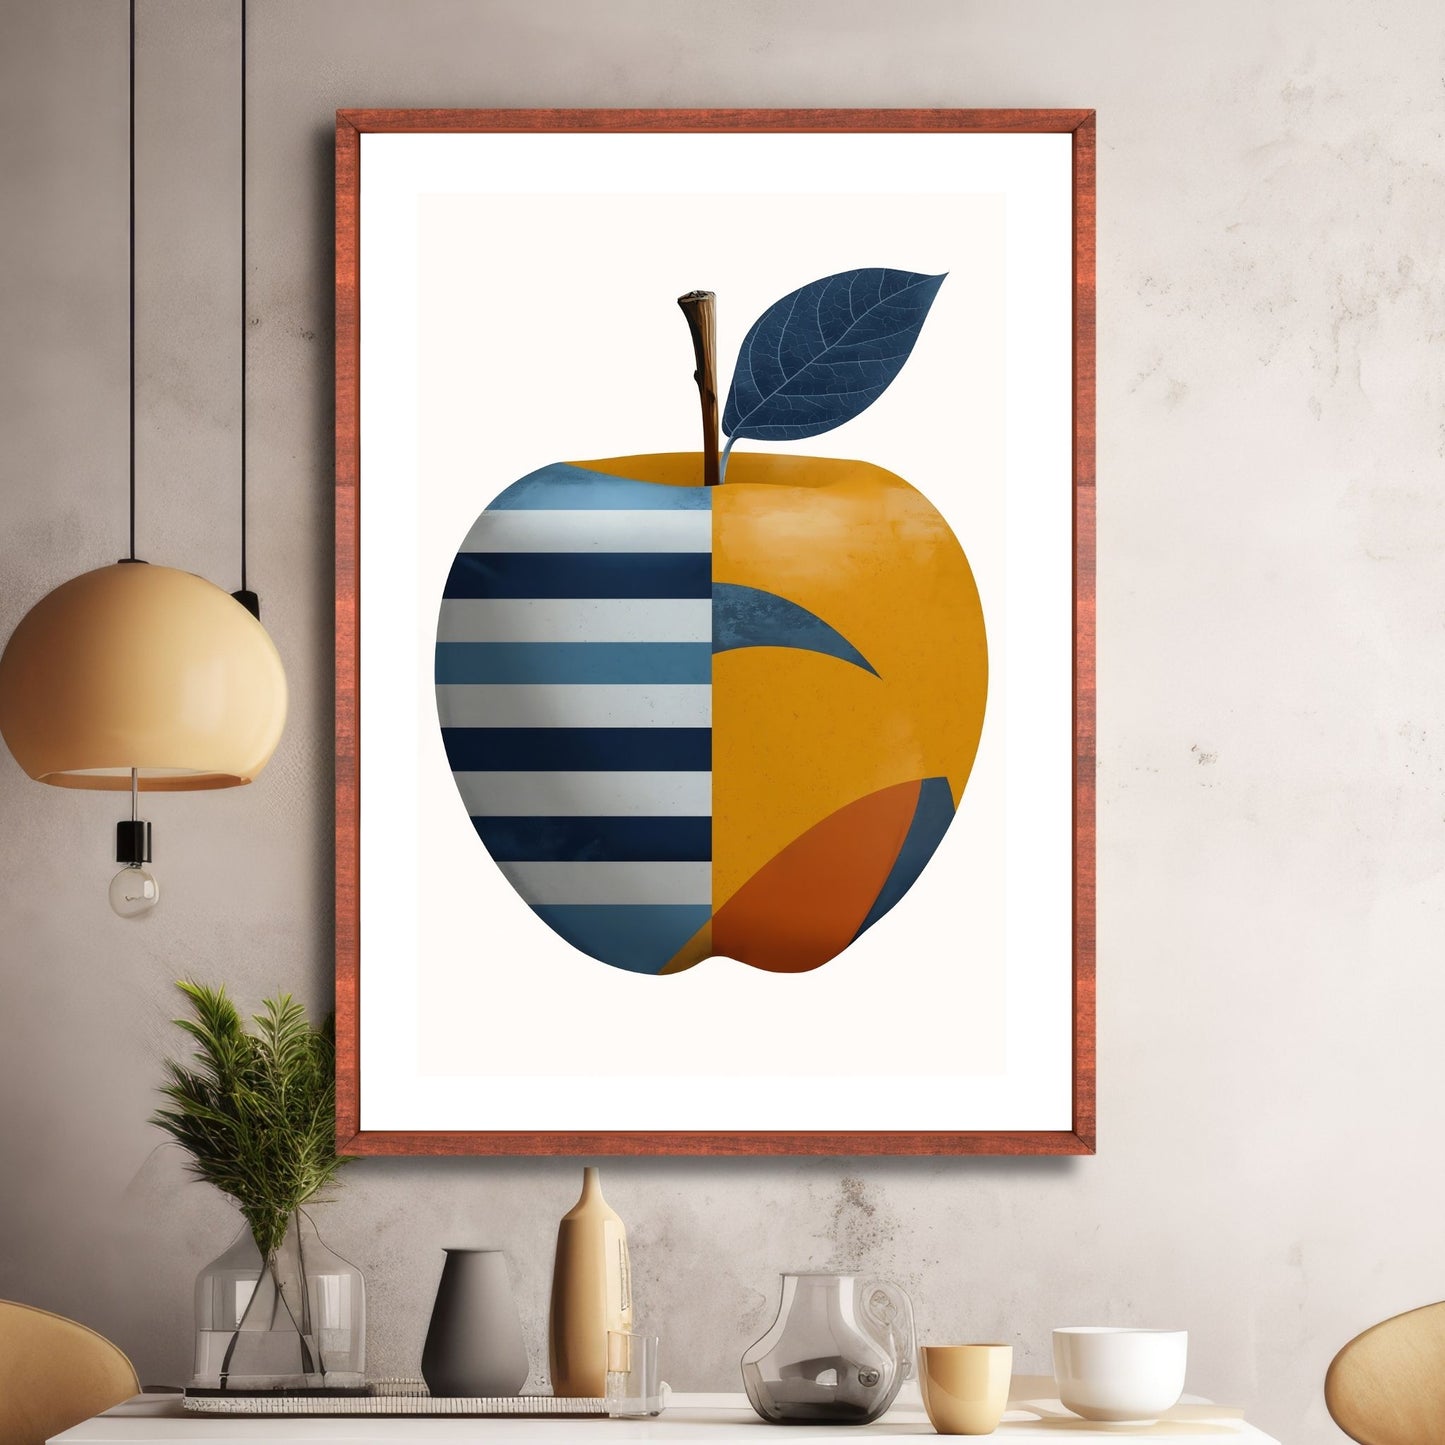 Illustrasjonen av et eple, dekorert med abstrakte former i livlige røde, gule og blåfarger. Bakgrunn i beige. Fås som plakat og lerret. Illustrasjon viser motiv i eikeramme.